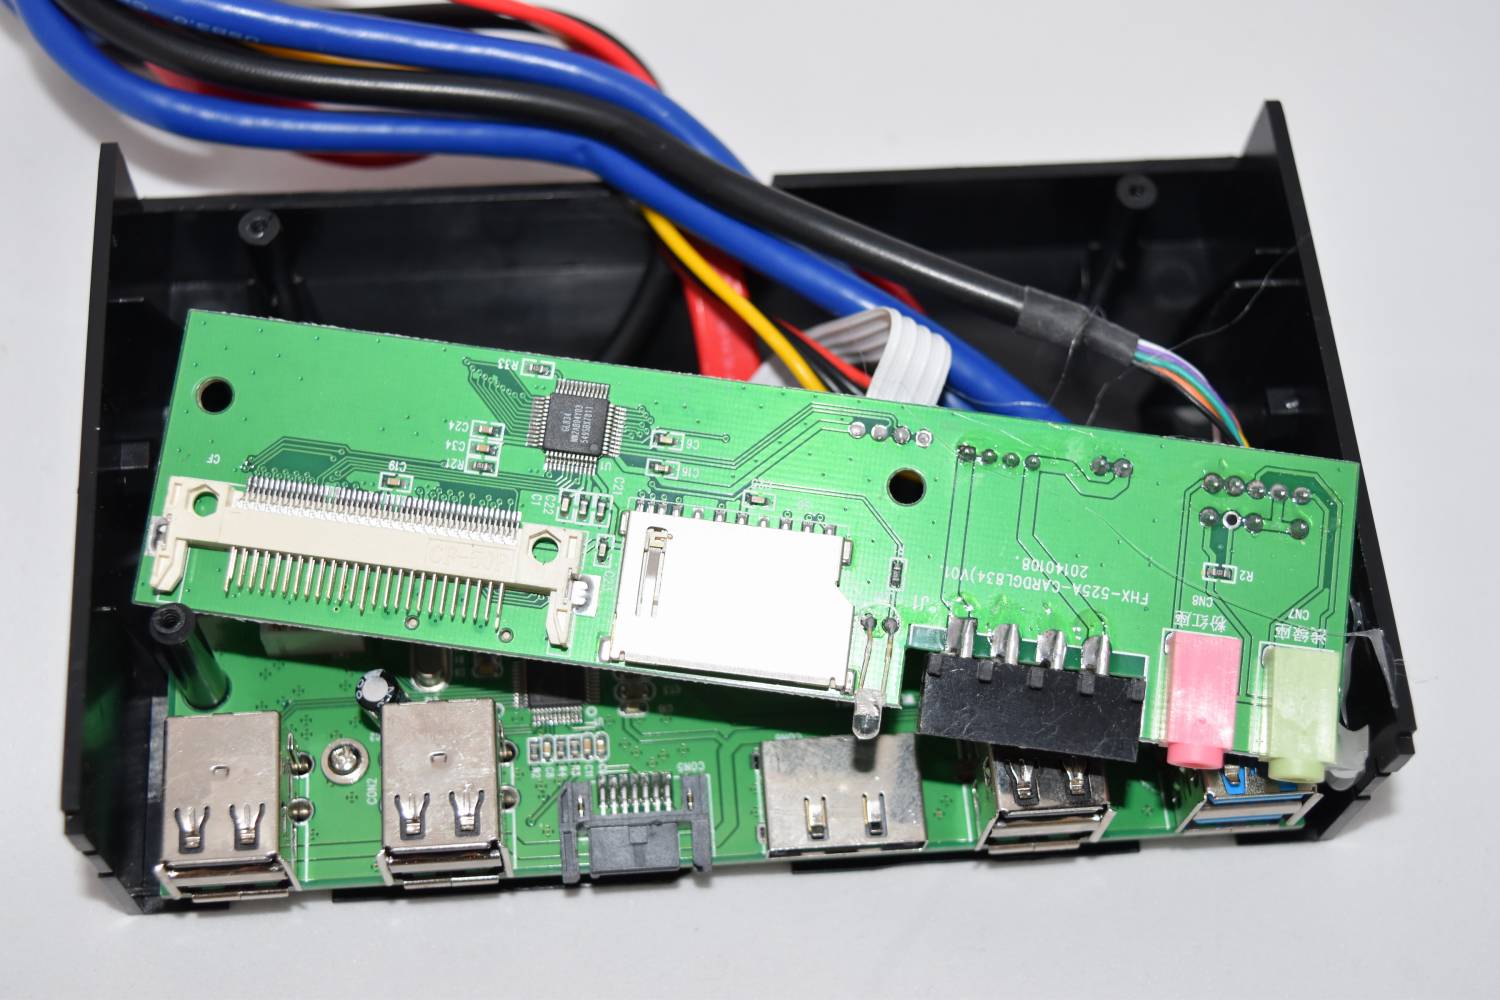 TVC-Mall: 5.25 inch USB 3.0 PC Media Dashboard Front Panel Card Reader HUB SATA eSATA - универсальный кардридер